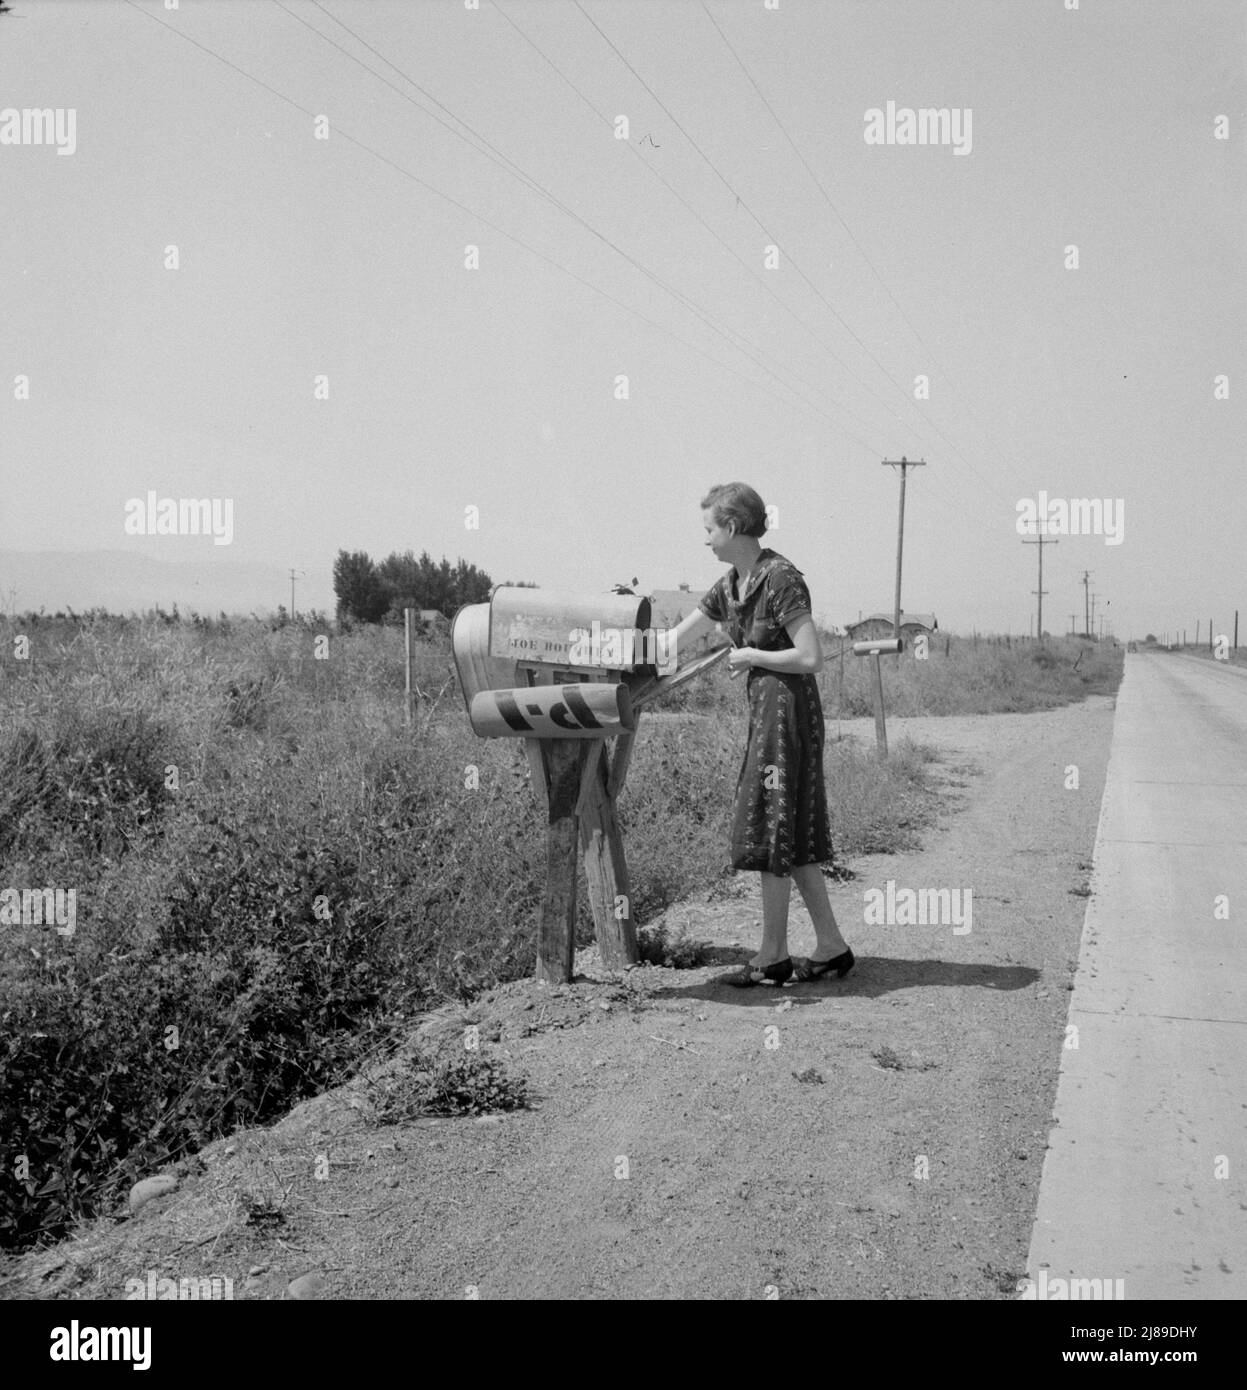 La Sra. Bouchey recibe el correo de la mañana. Esposa del cliente de compra del inquilino. Washington, Yakima Valley, cerca de Toppenish. Foto de stock